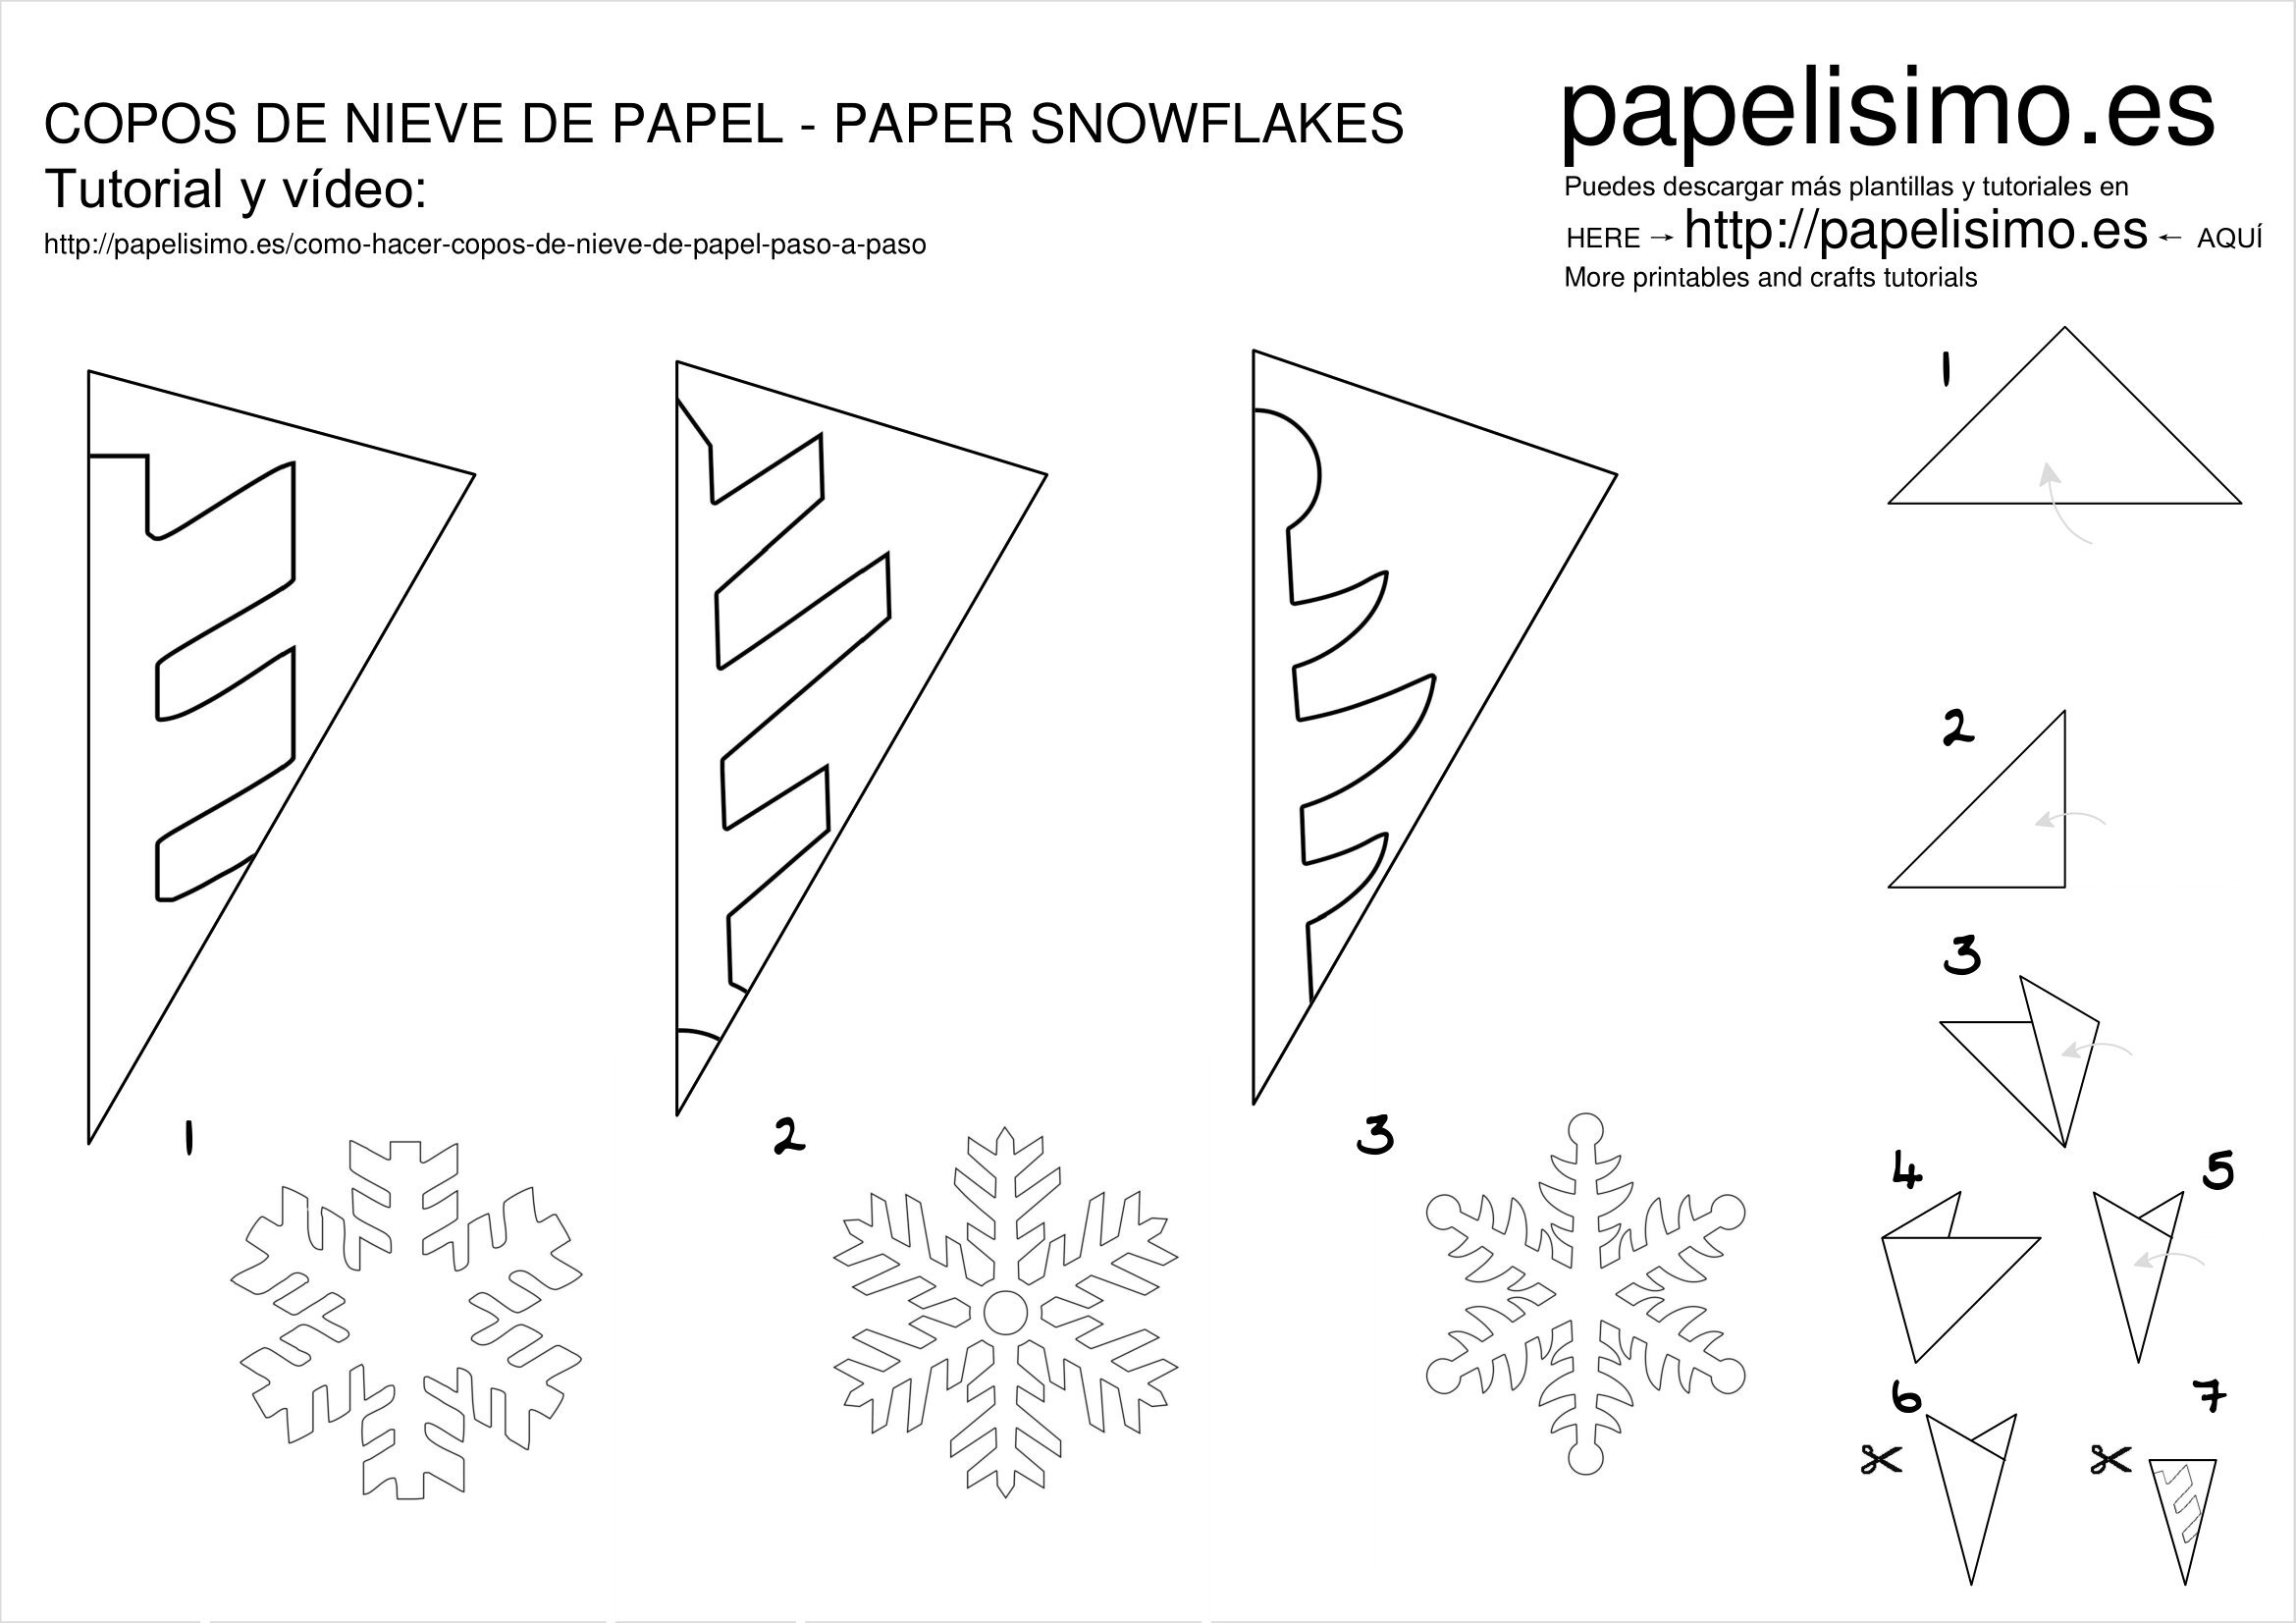 Снежинки из бумаги на Новый год своими руками, мастер-классы, схемы